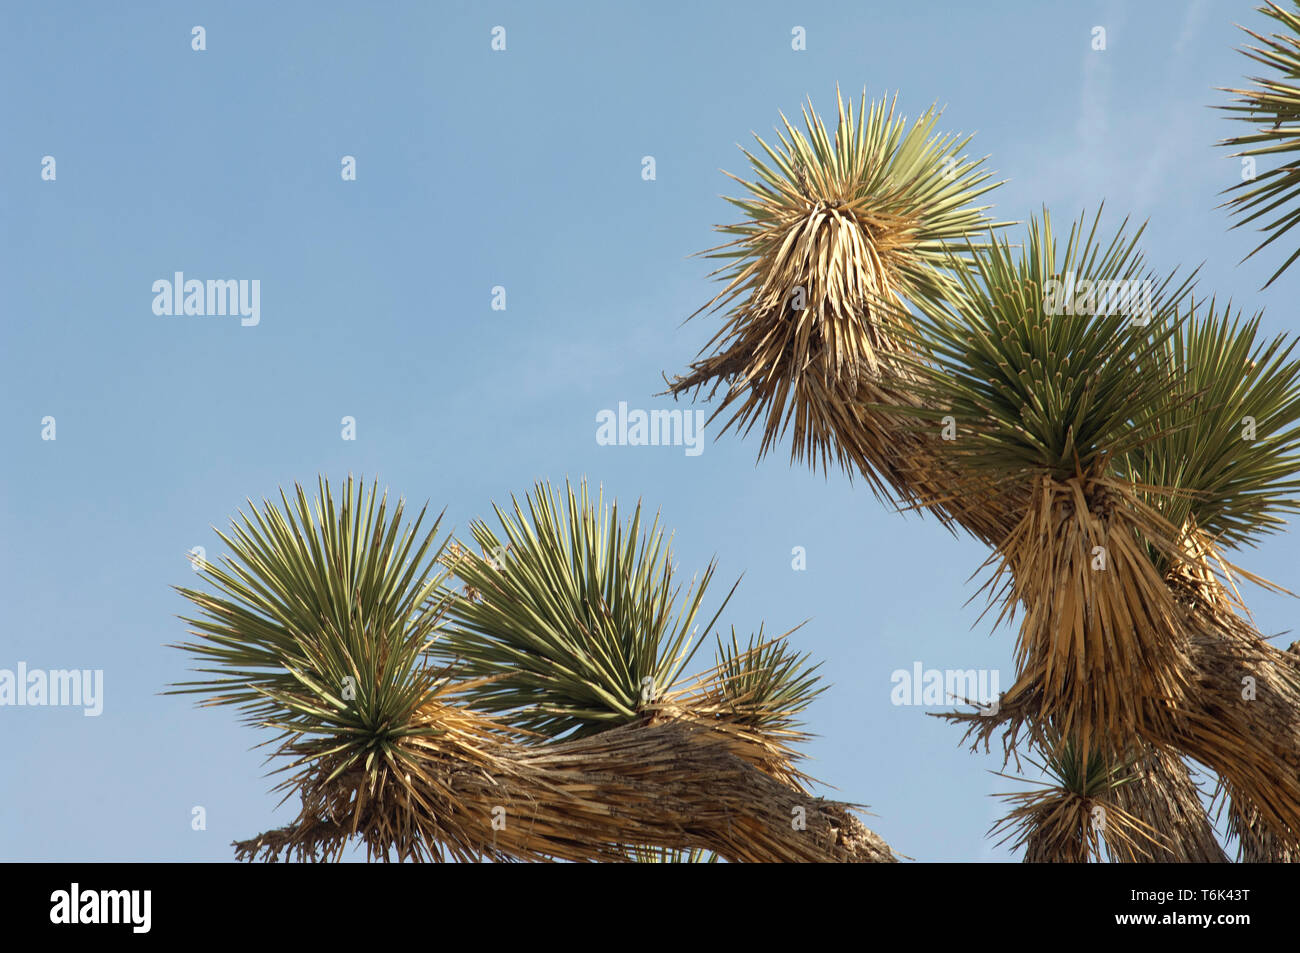 Détail du feuillage de Joshua tree, Big Rock Creek Wildlife Sanctuary, en Californie. Photographie numérique Banque D'Images